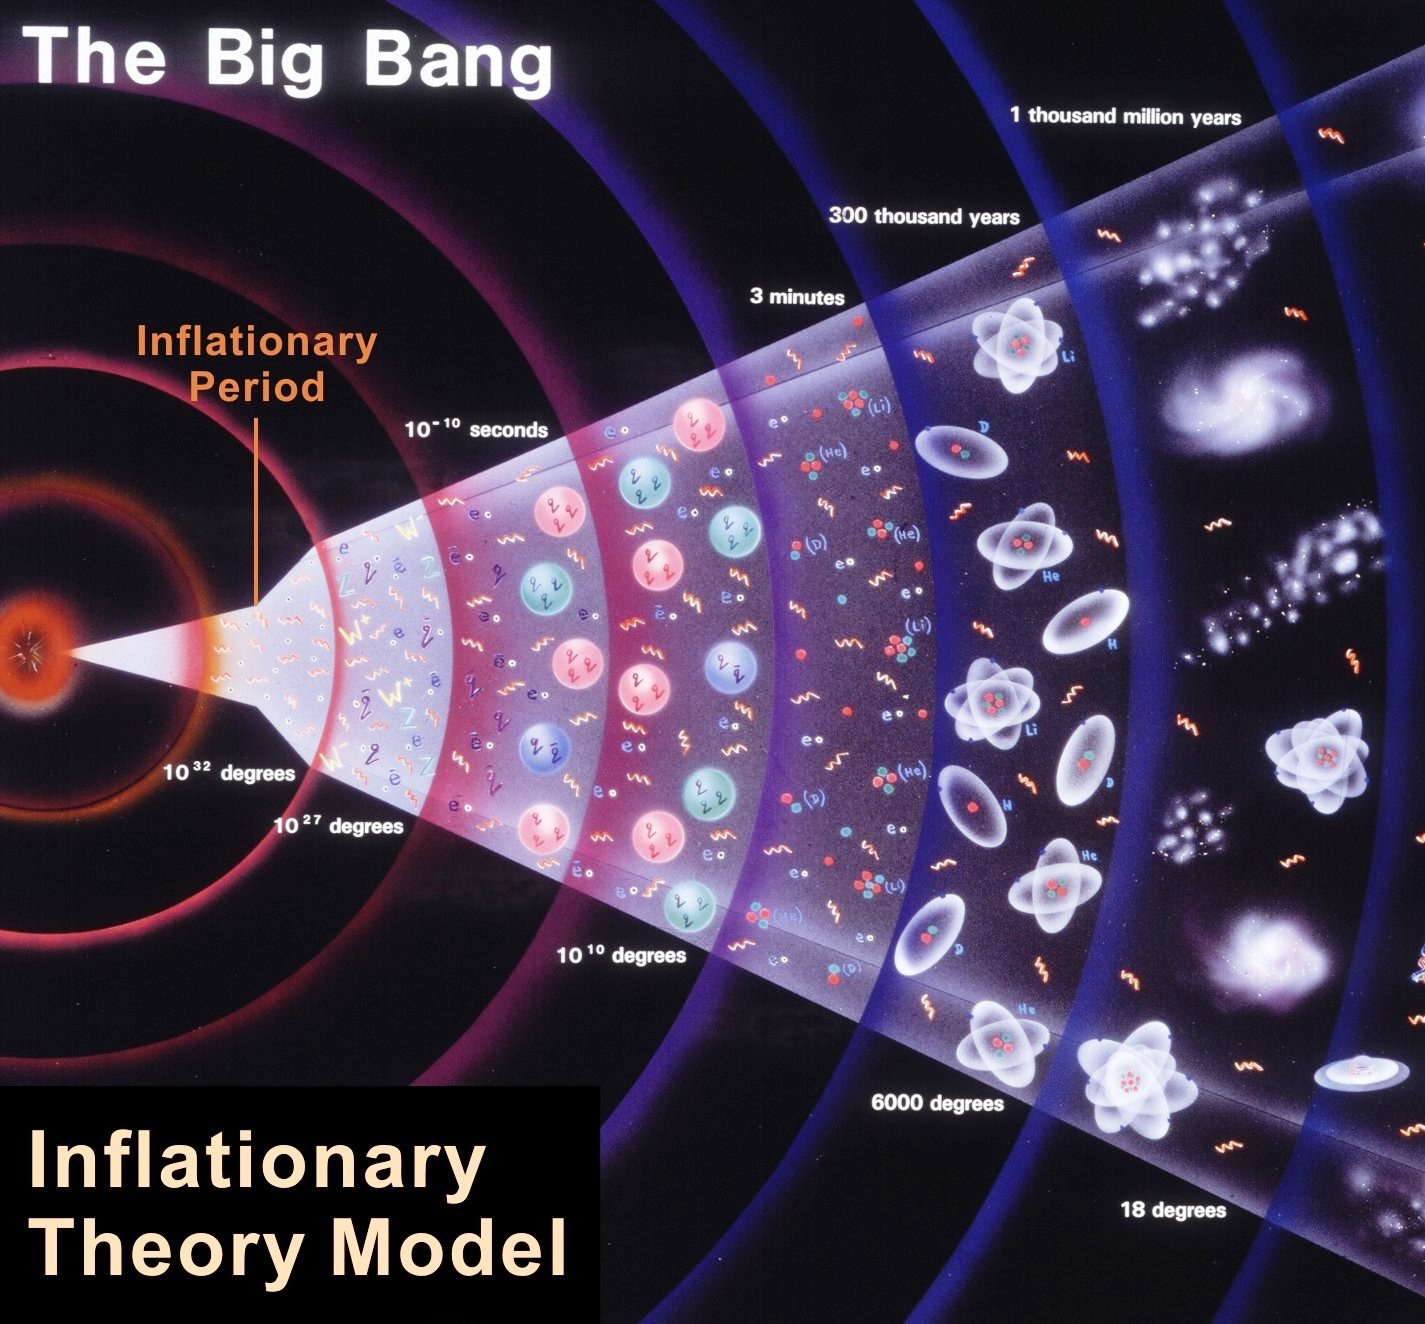 L'histoire du cosmos, de l'ère de Planck à nos jours. Peu après le temps de Planck, l'espace aurait subi pendant une infime fraction de seconde une période d'expansion exponentiellement accélérée : la phase inflationnaire (inflationary period) de la théorie de l'inflation. C'est à la fin de cette phase que la matière de l'univers observable serait née. L'inflation a peut-être été causée 10-35 seconde après le Big Bang par des analogues du champ de Brout-Englert-Higgs du modèle électrofaible. Vers 10-11 s, une petite phase d'inflation s'est probablement produite au moment où le mécanisme de Brout-Englert-Higgs a donné des masses aux bosons W et Z. La transition de phase électrofaible aurait laissé des traces sous la forme d'un fond de rayonnement gravitationnel fossile qui sera peut-être mesurable dans quelques décennies. © Cern